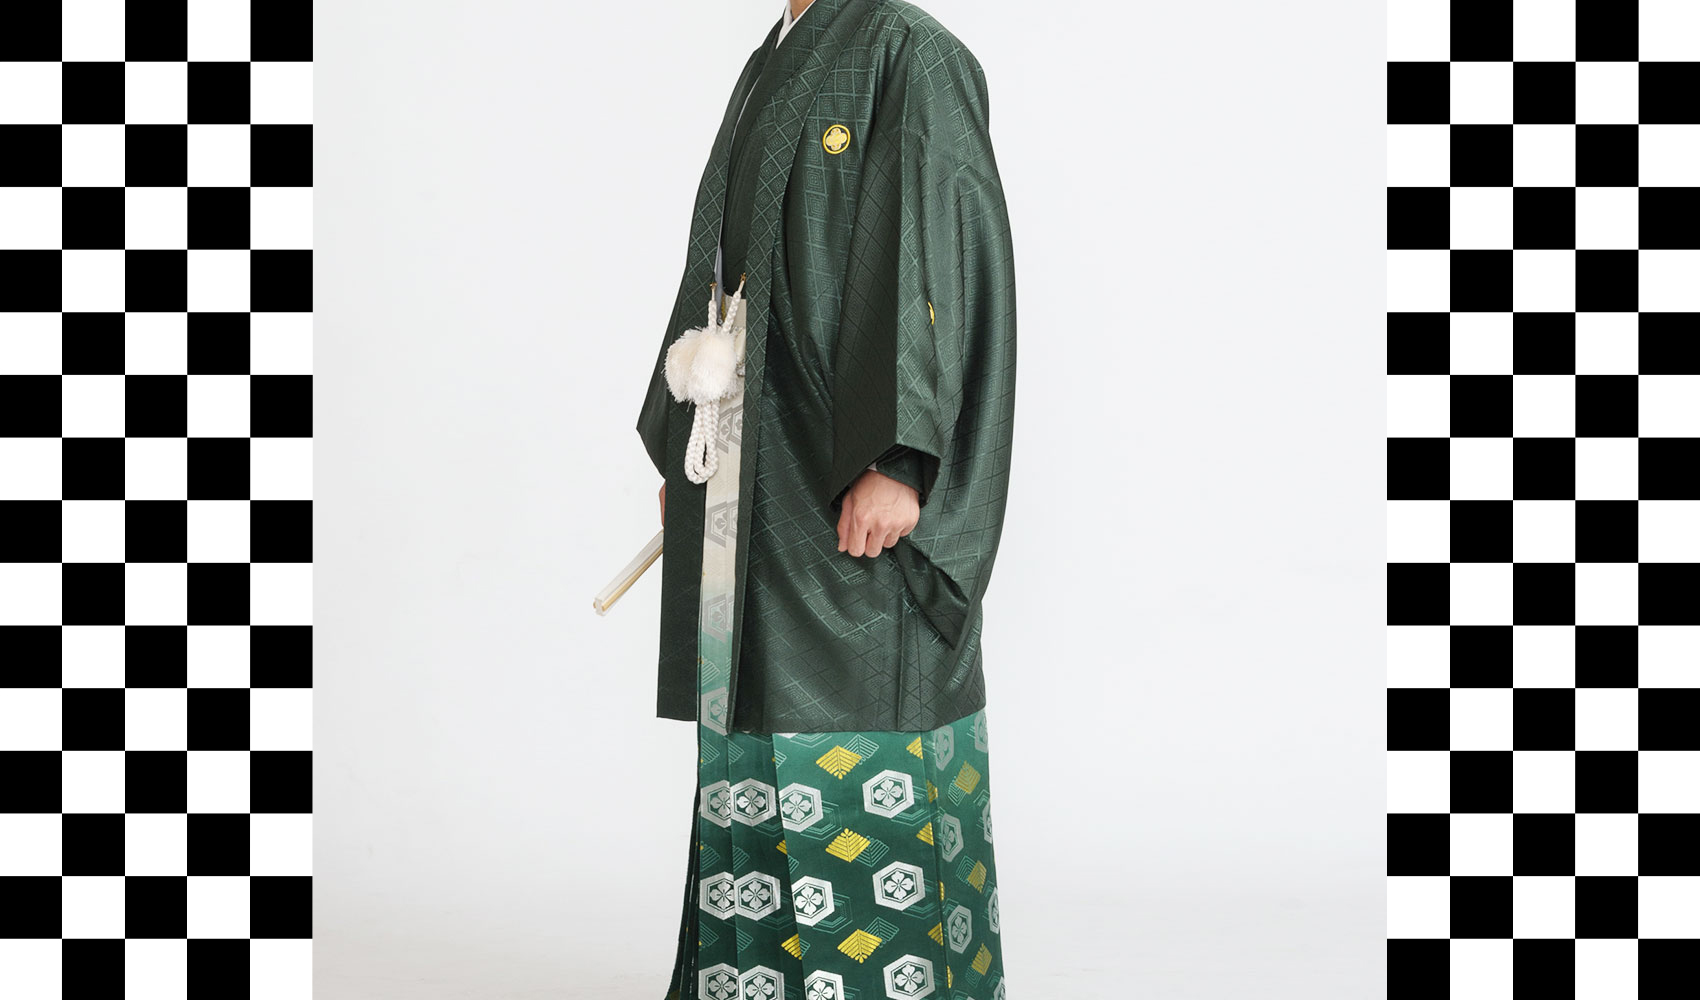 男性袴コレクション5。羽織と着物が濃いグリン、袴は豪華なグリンぼかしのコーデ